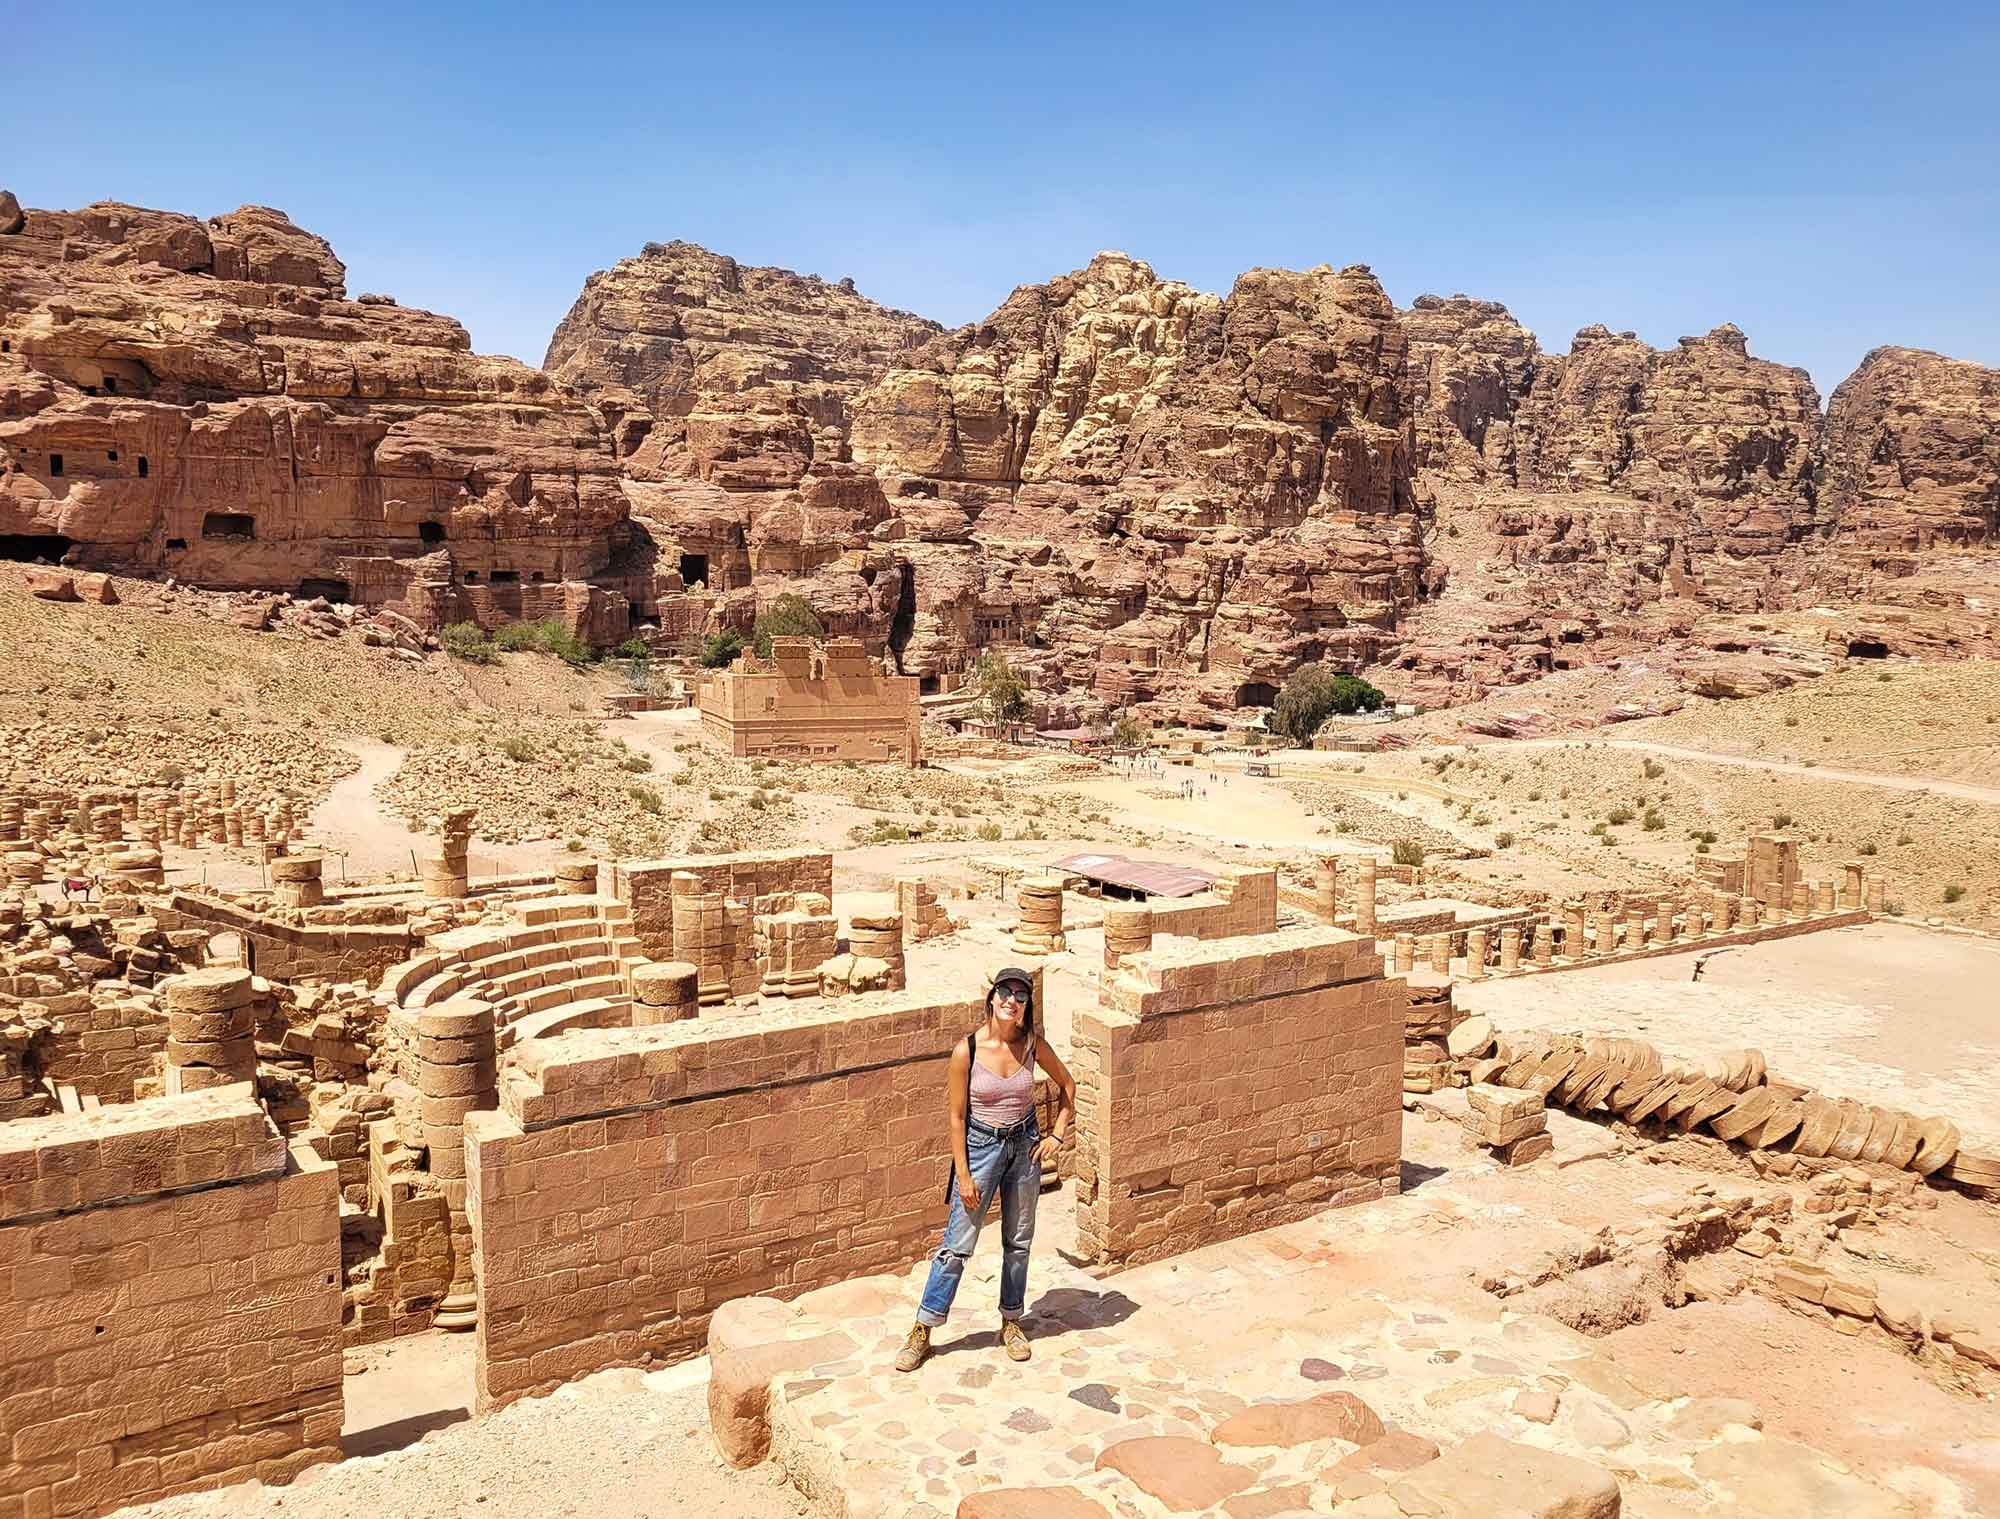 Exploring Jordan’s most famous site, Petra